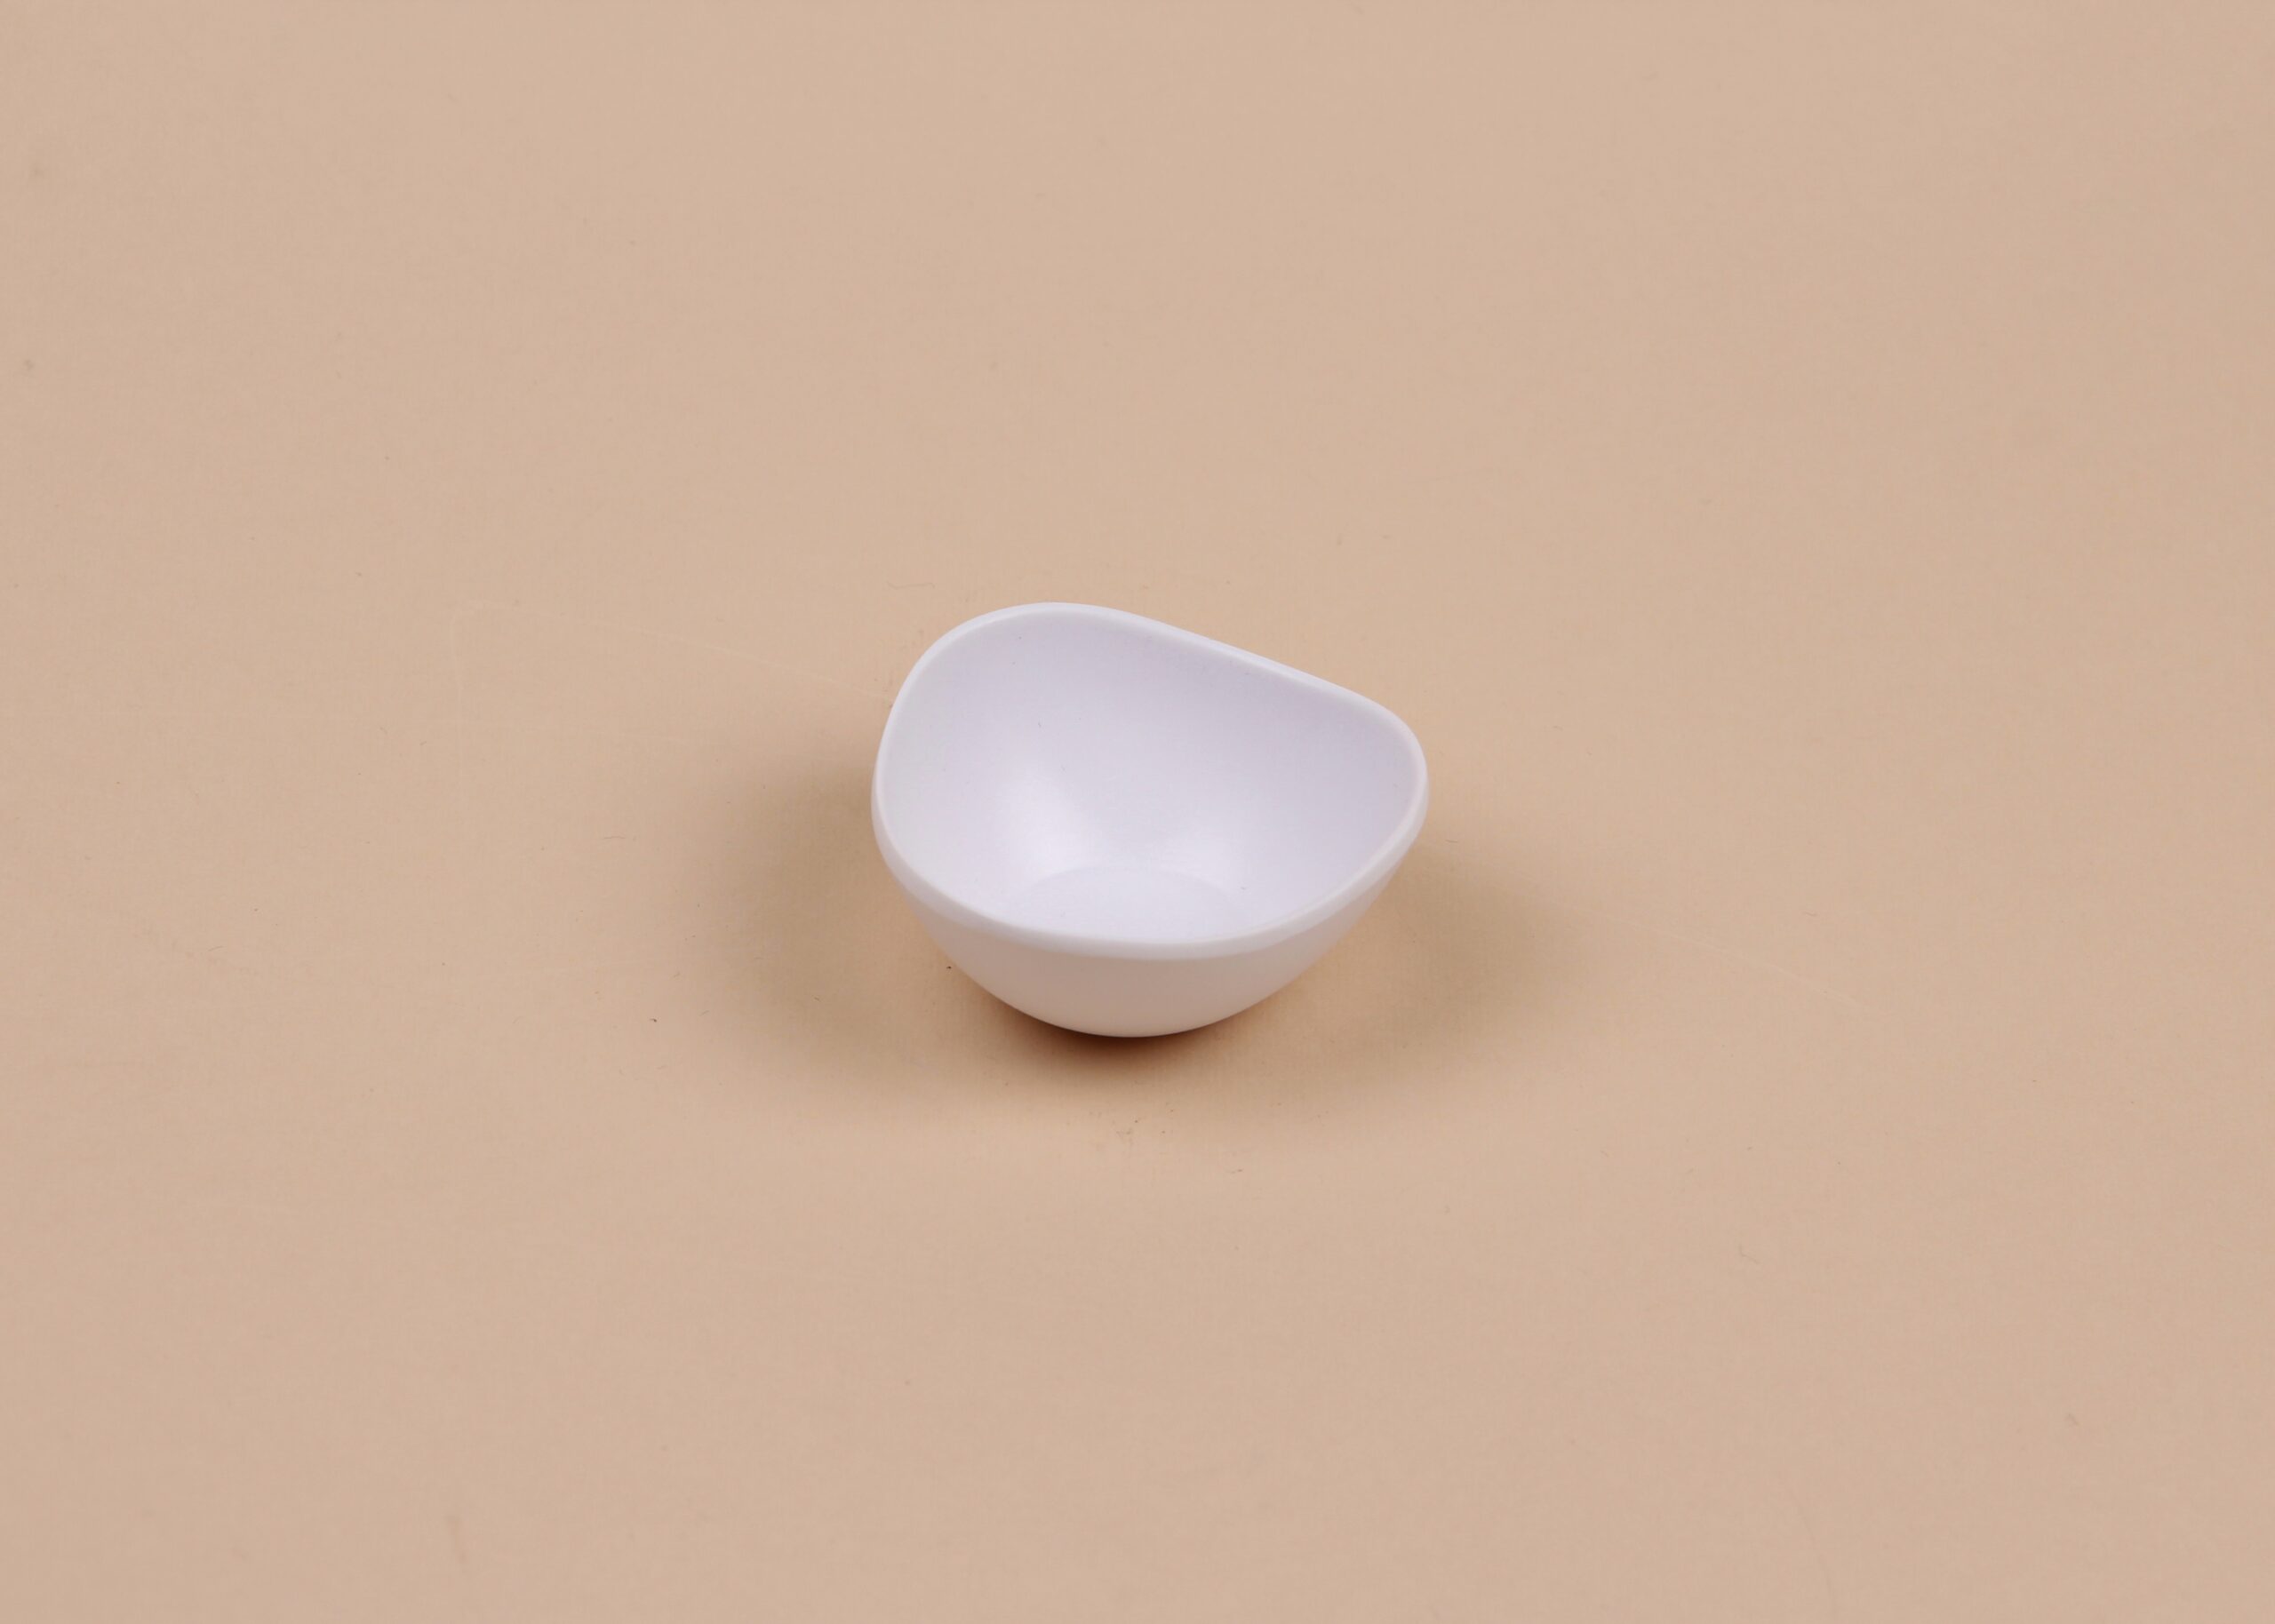 Чаша для соуса треугольная округлая белая, 20 мл, арт. 607073